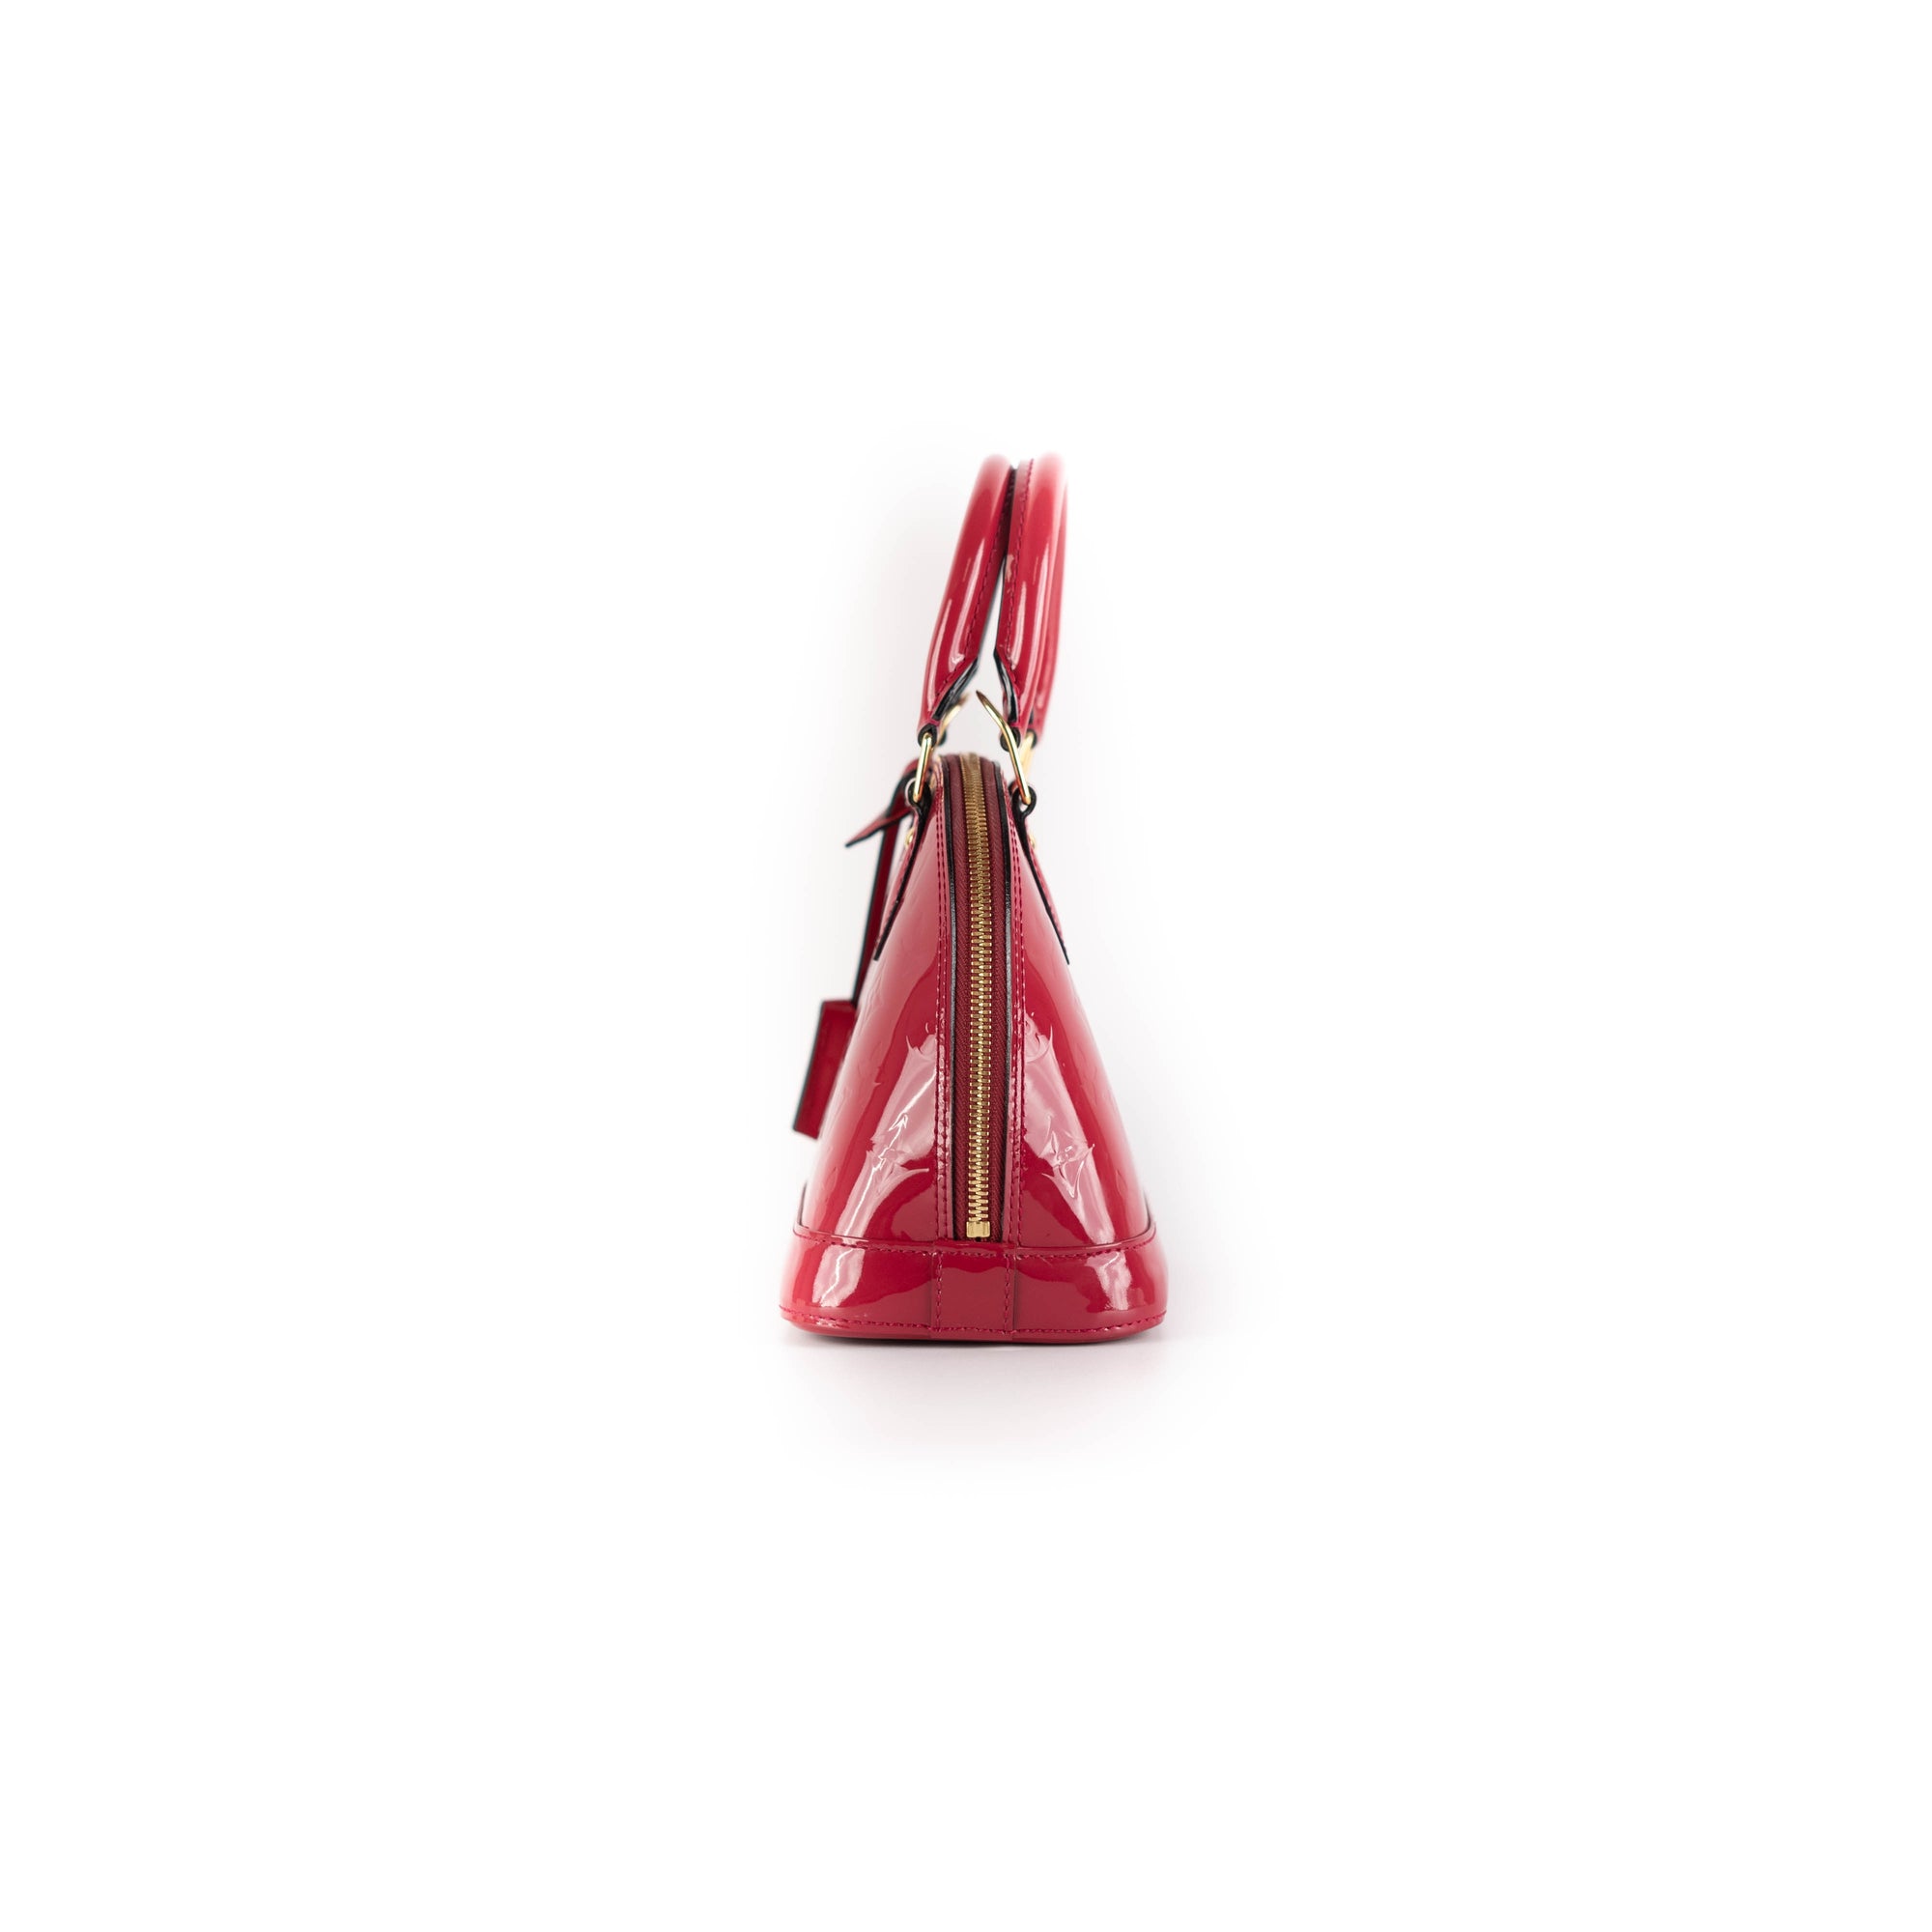 Louis Vuitton Alma Bb Patent Red Bag - THE PURSE AFFAIR